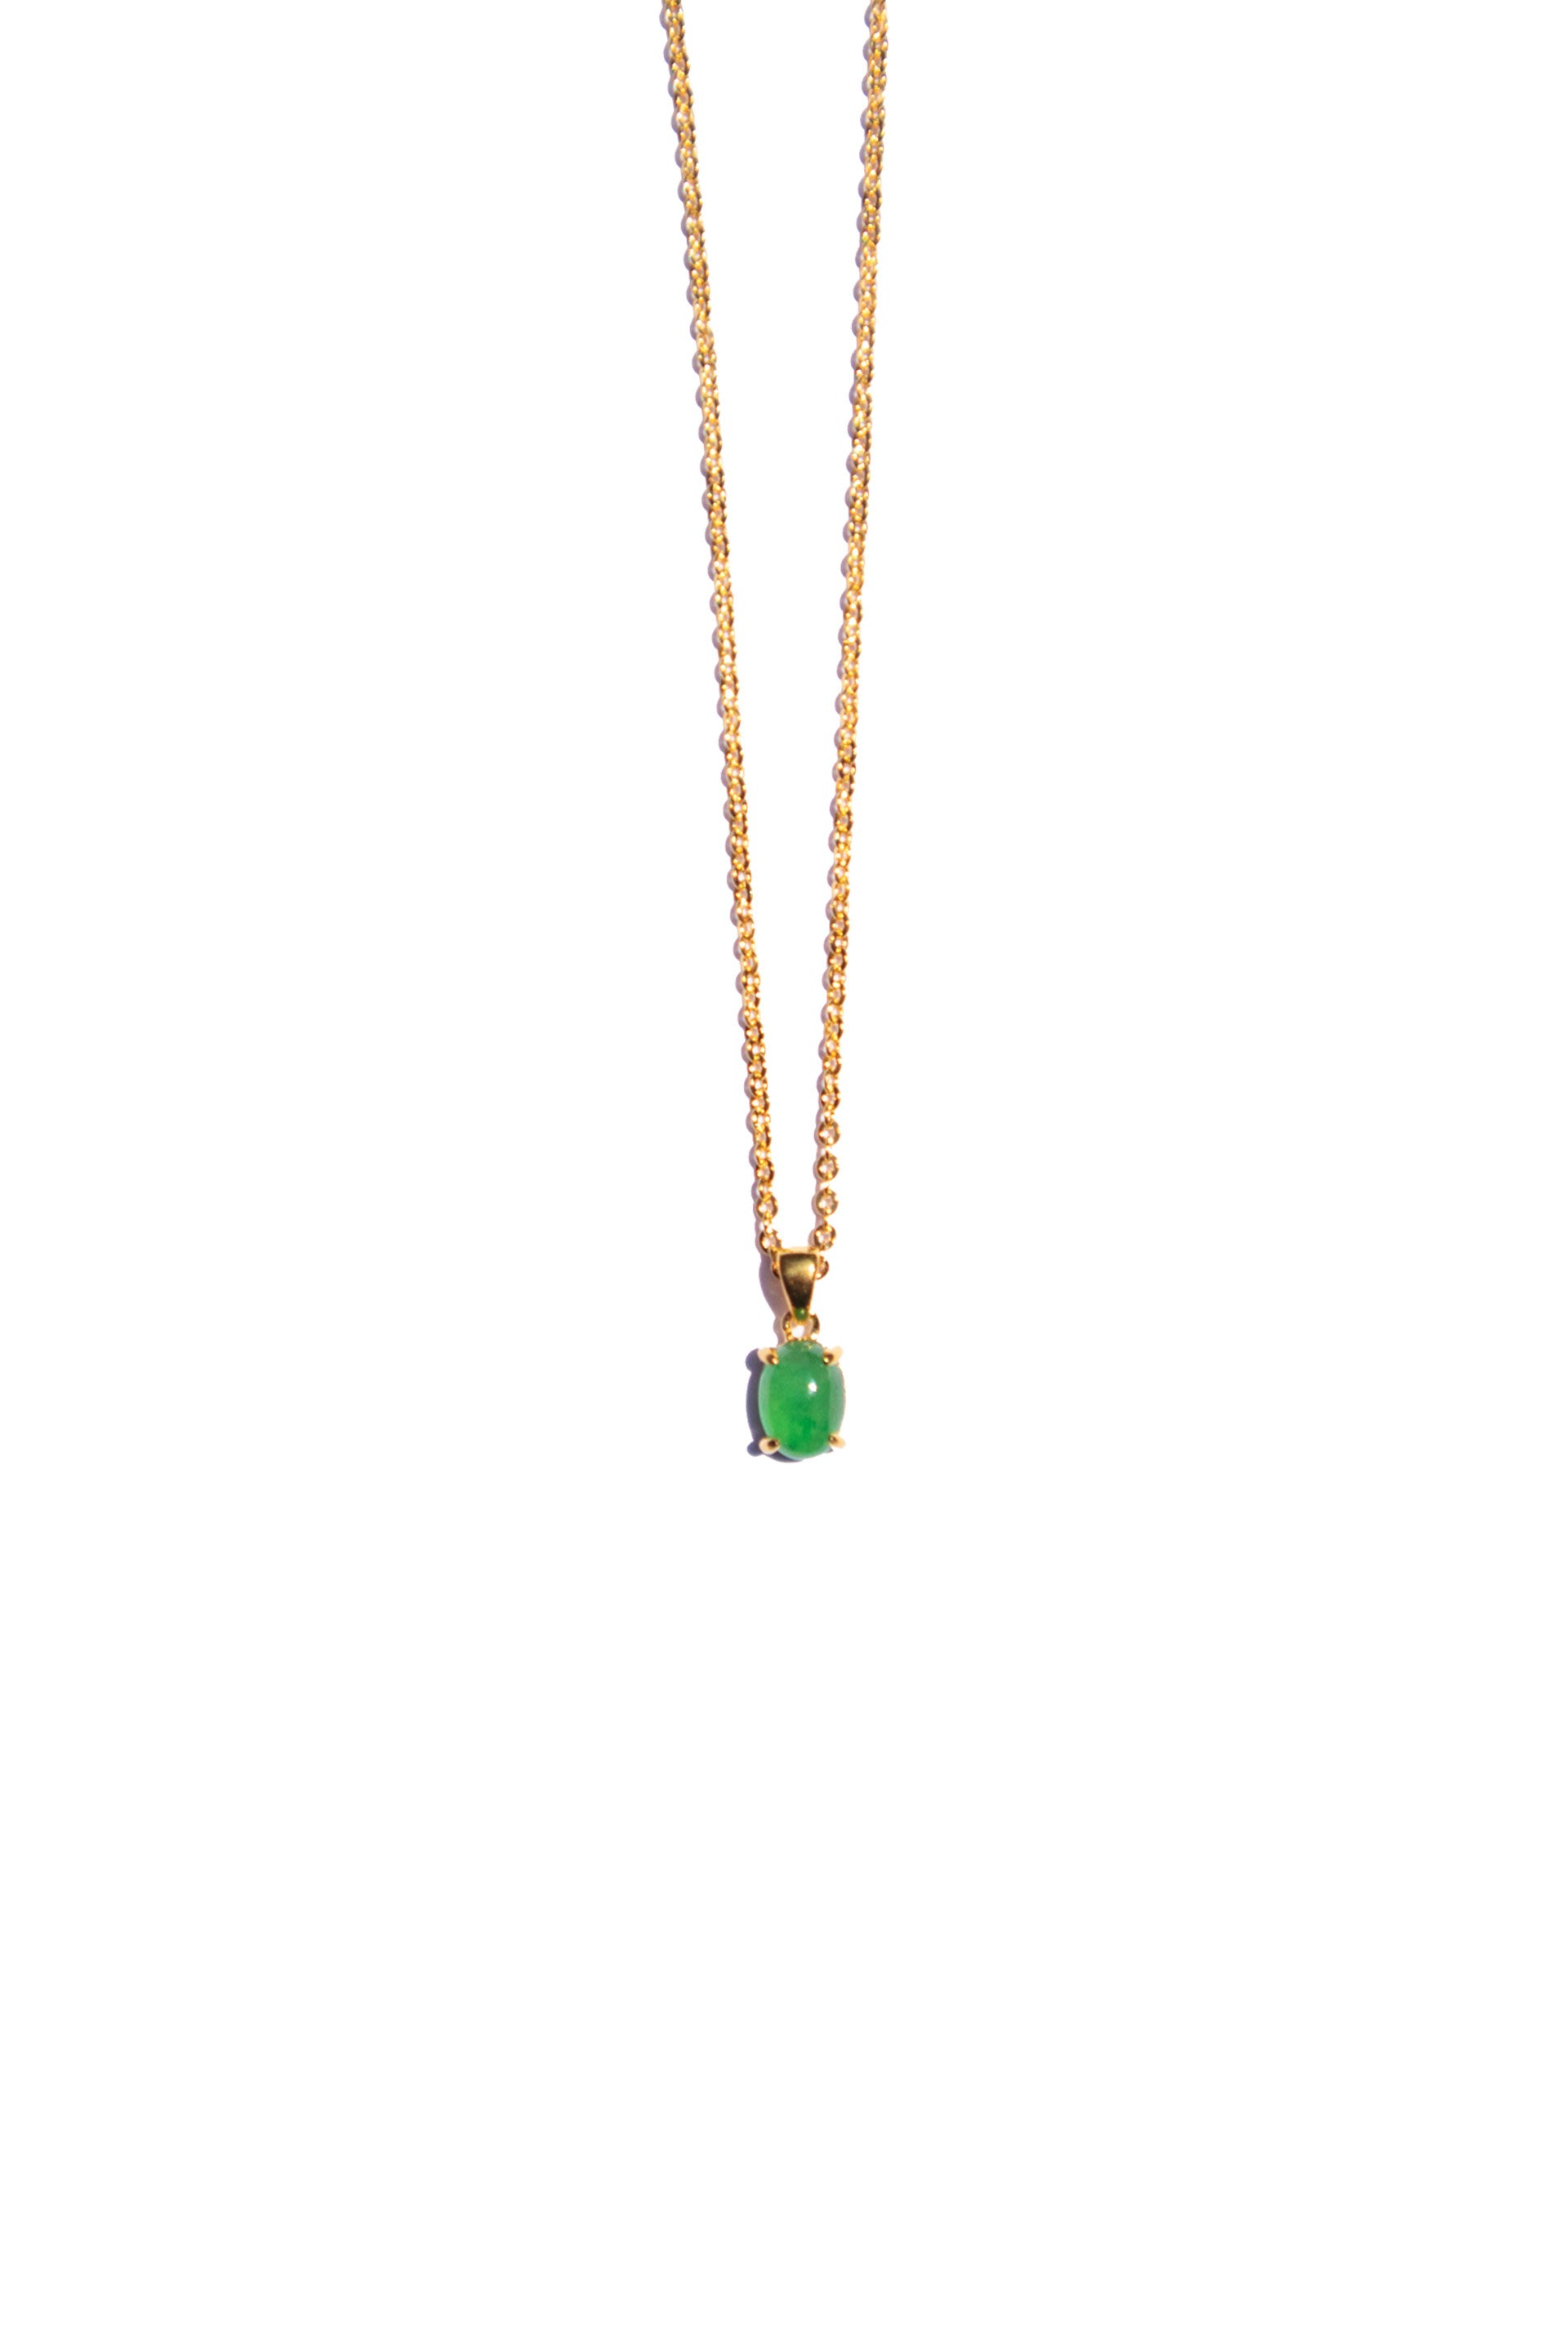 Women’s Seree Atelier Freya Imperial Green Jade Necklace